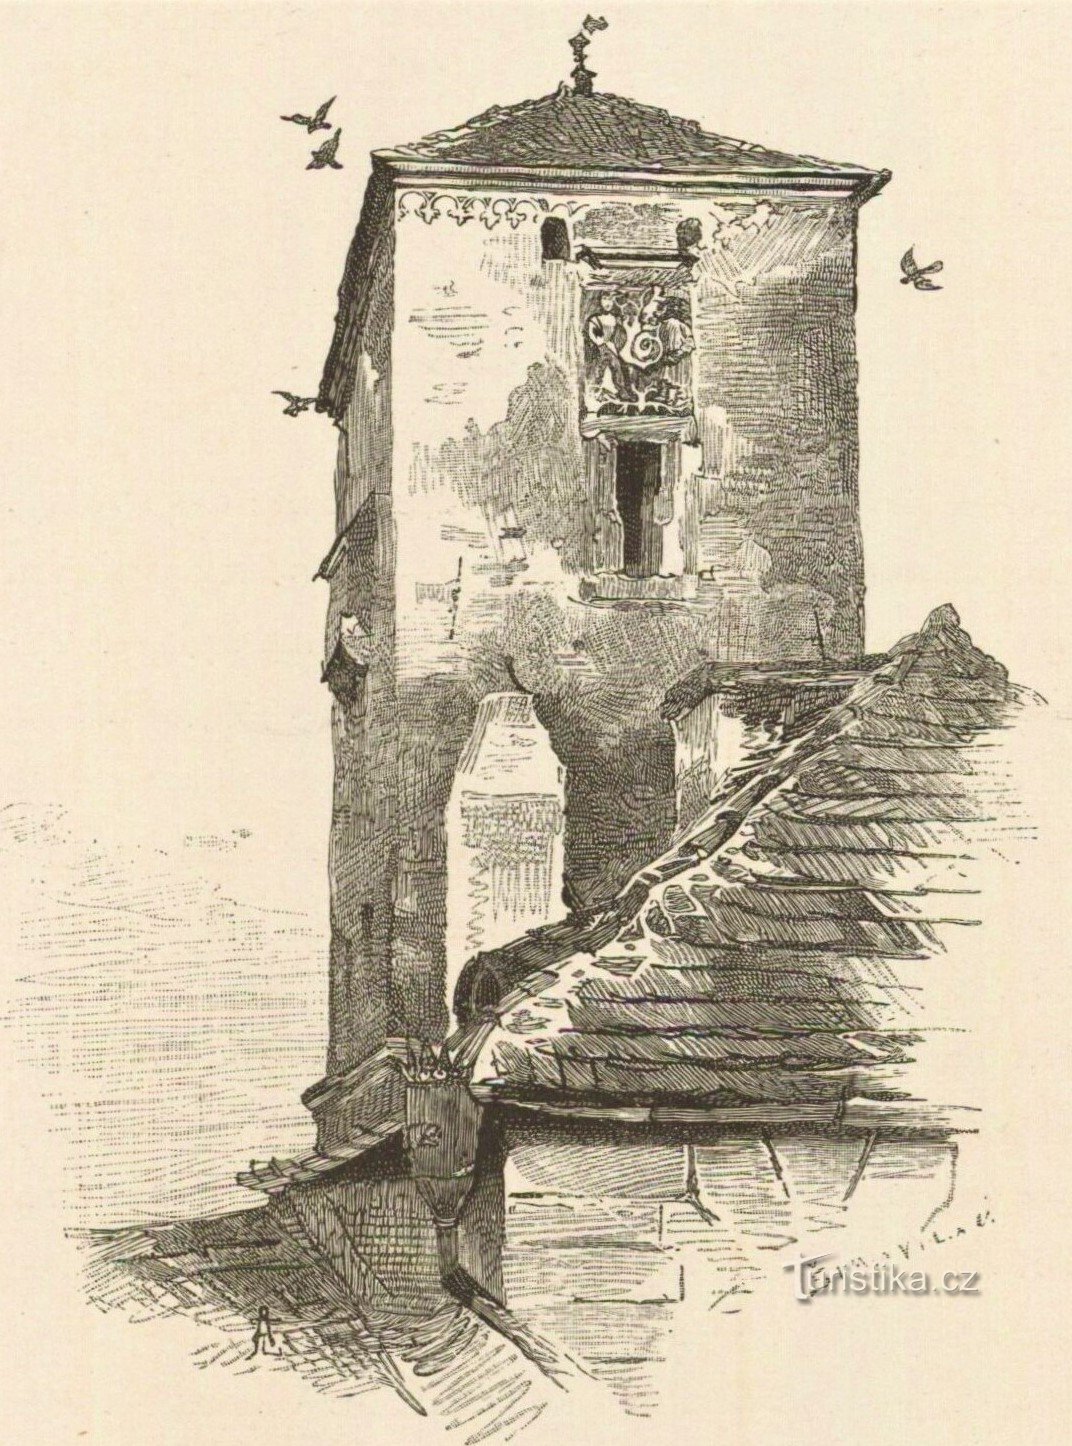 Kropáčki stolp na risbi s konca 19. stoletja